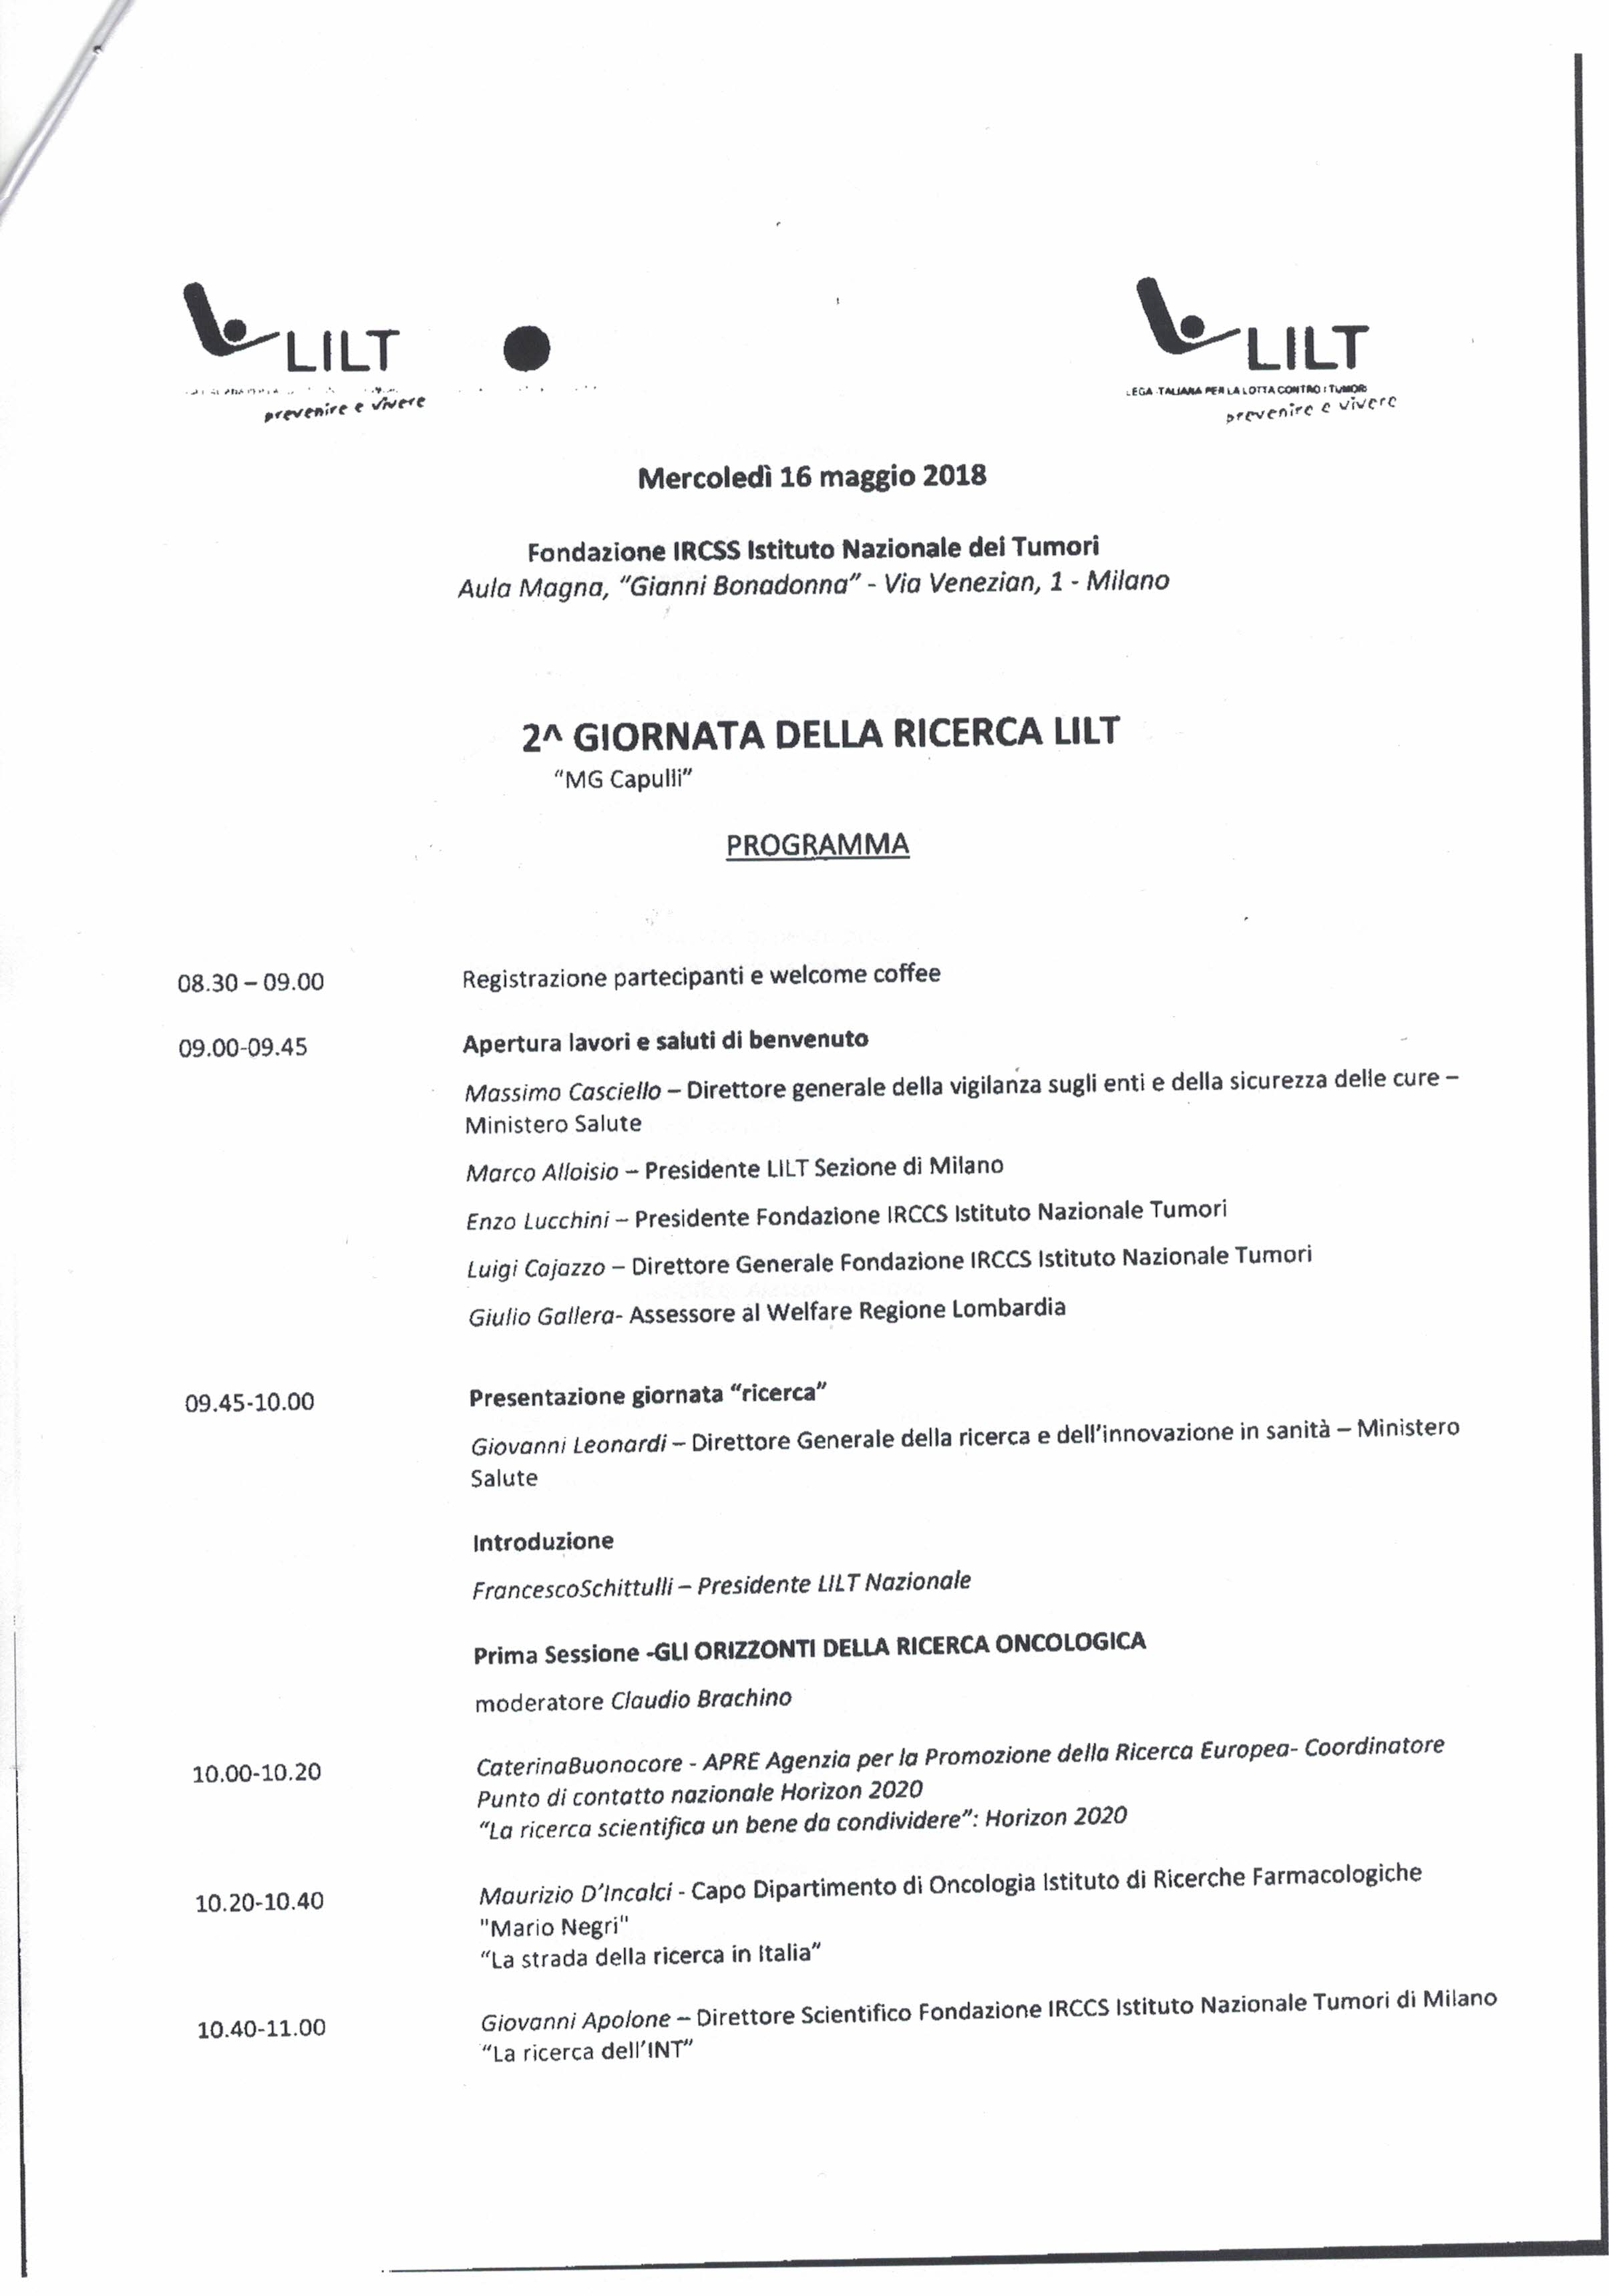 Mercoledì 16 Maggio 2018     2° GIORNATA DELLA RICERCA LILT. Convegno Istituto Tumori Milano